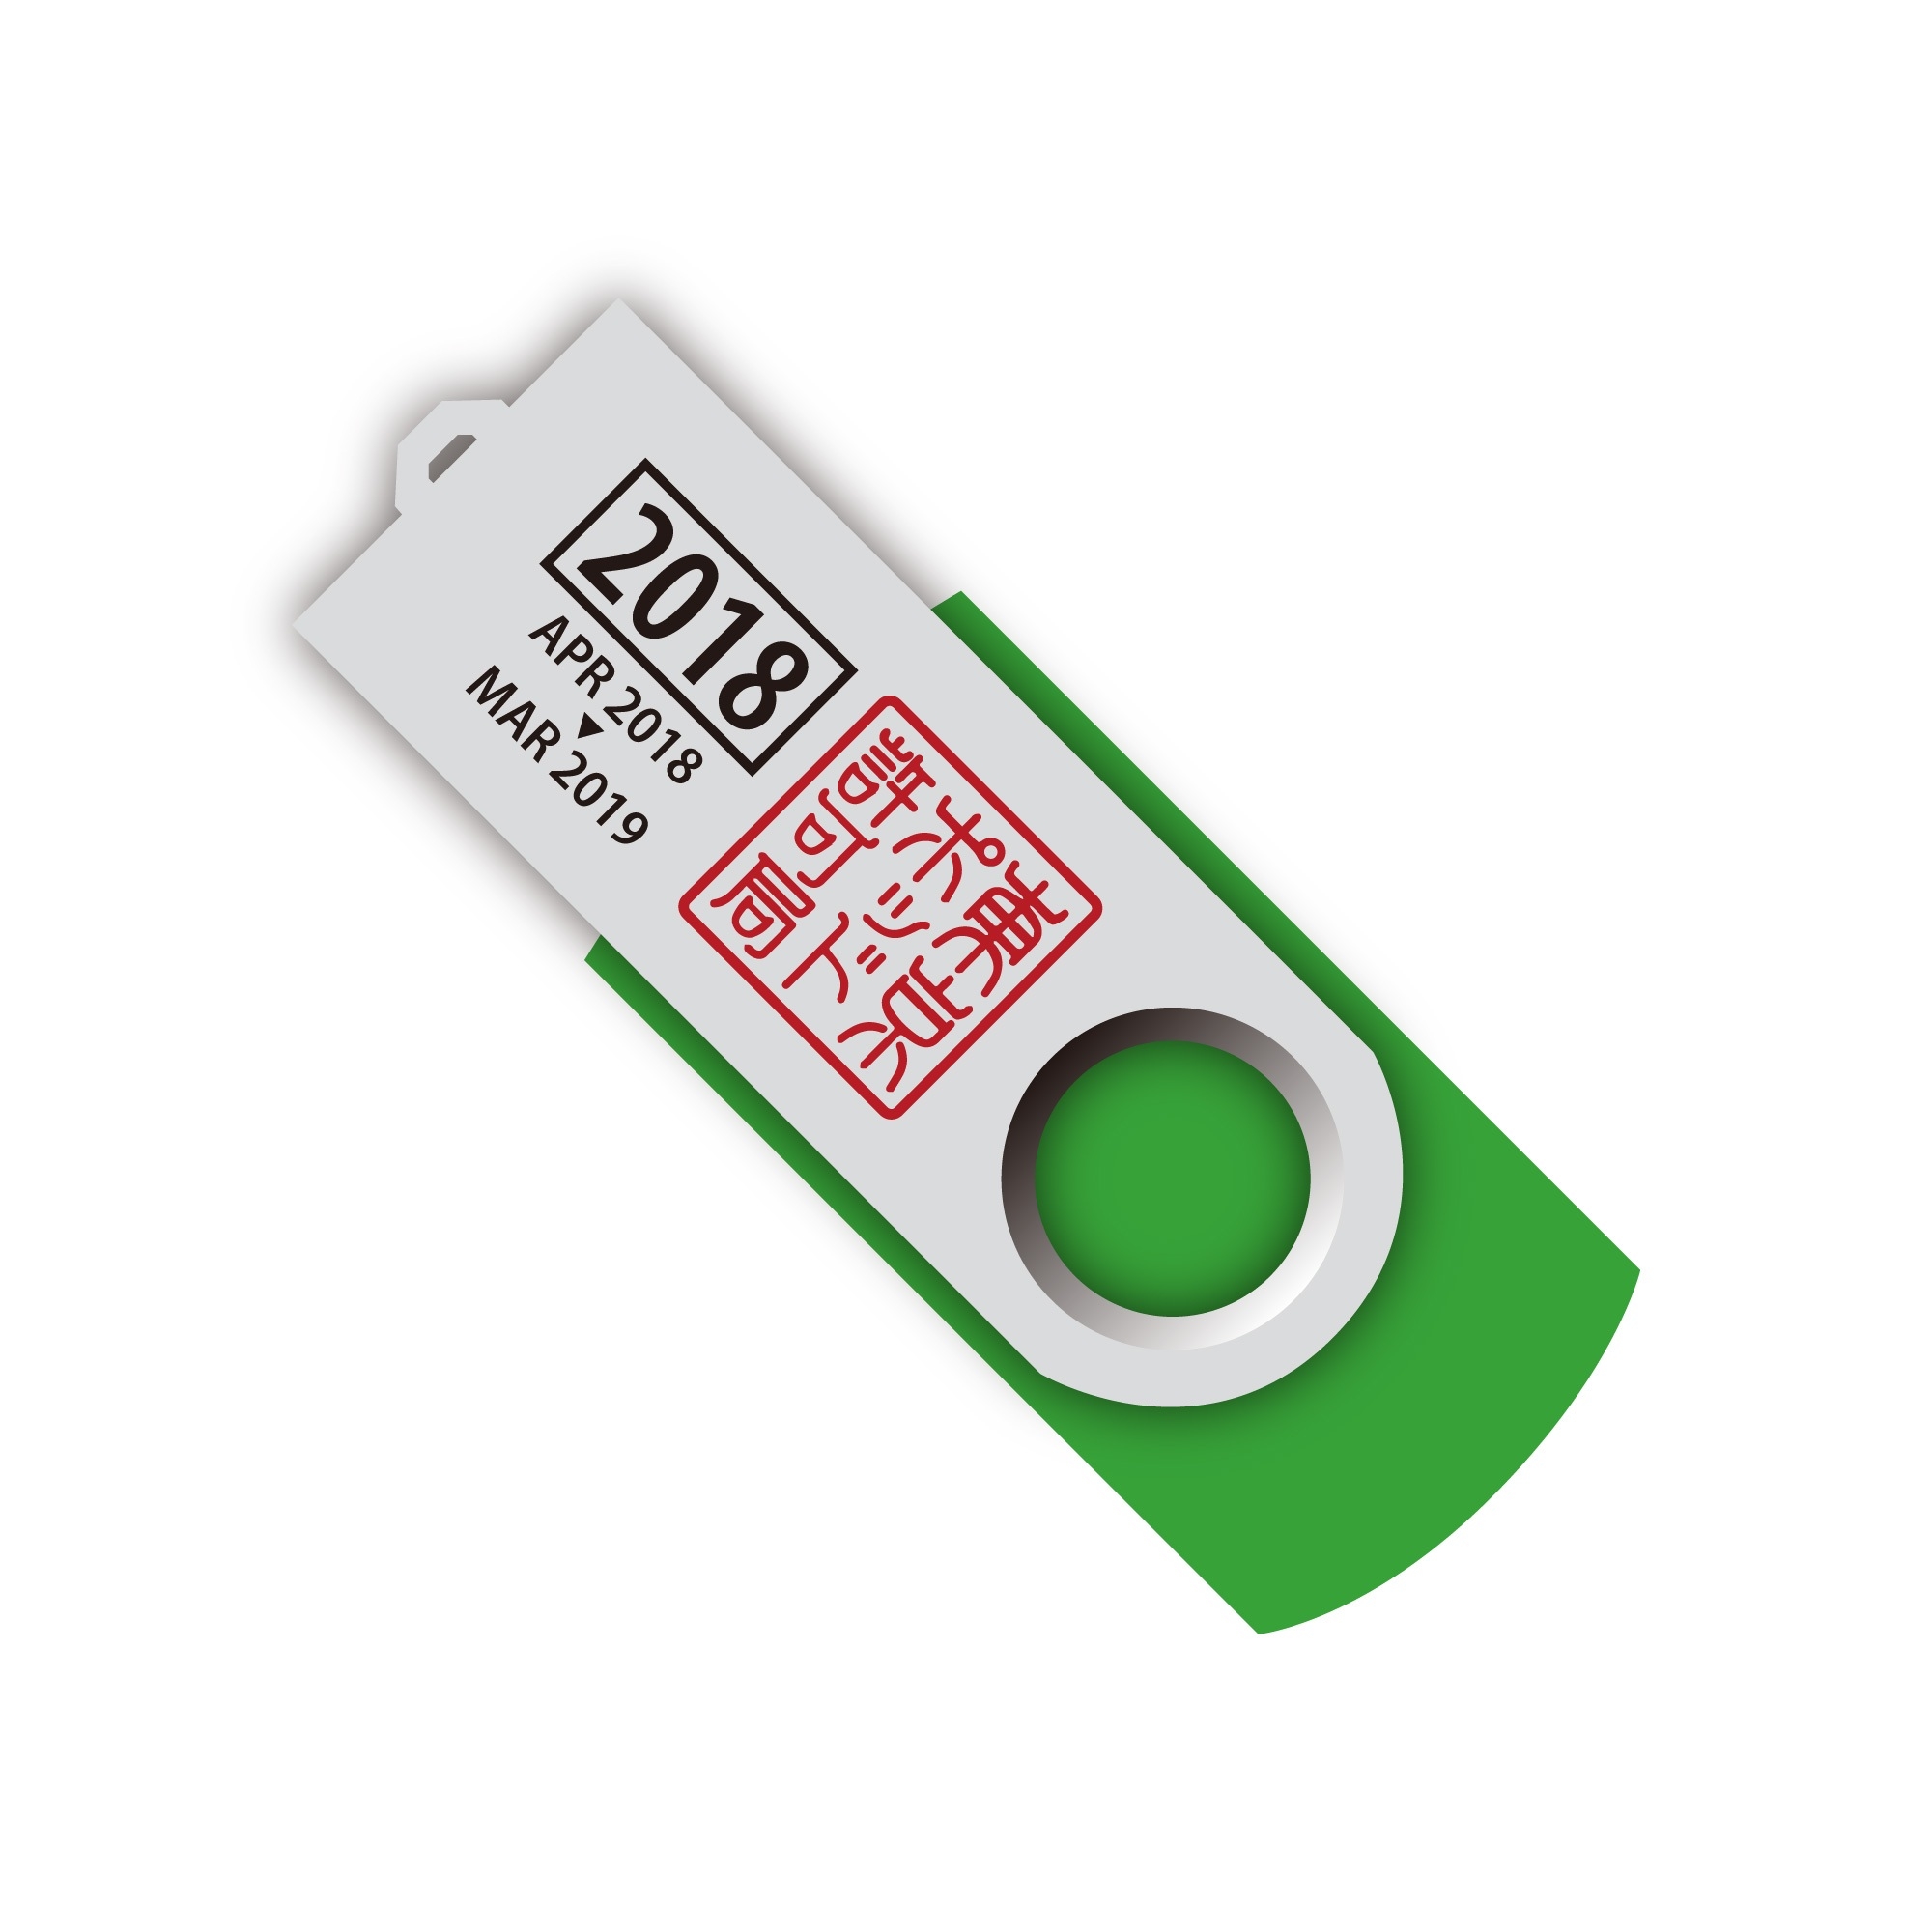 東京ポッド許可局の過去音源収録USBメモリ2015〜2018-